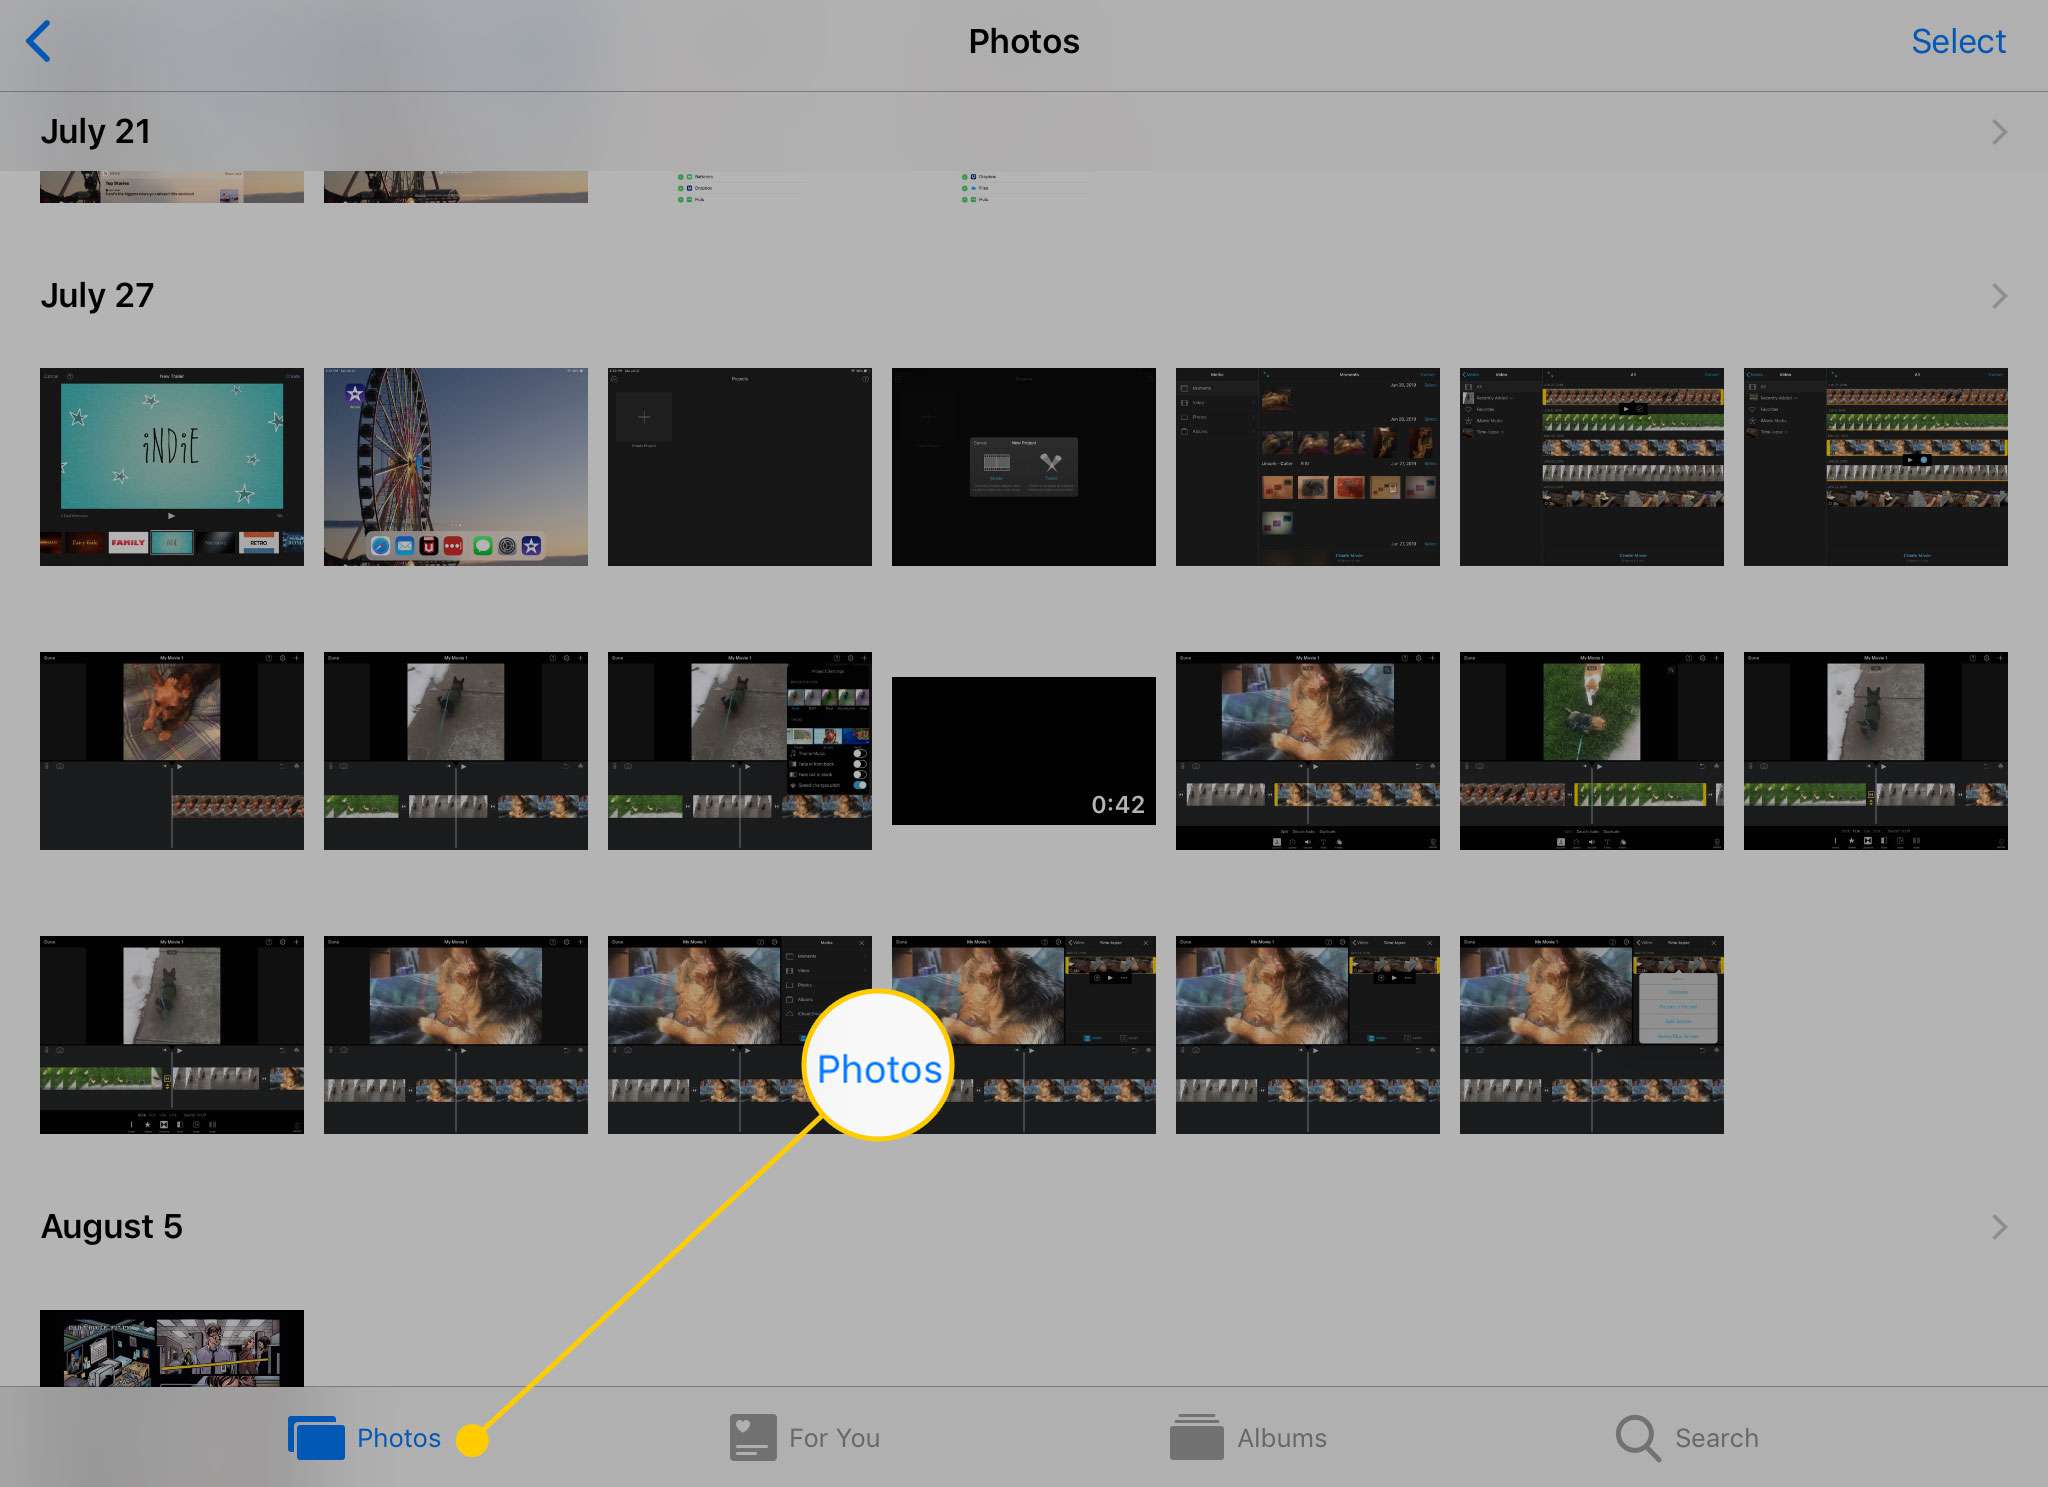 Guia Fotos no aplicativo Fotos em um iPad